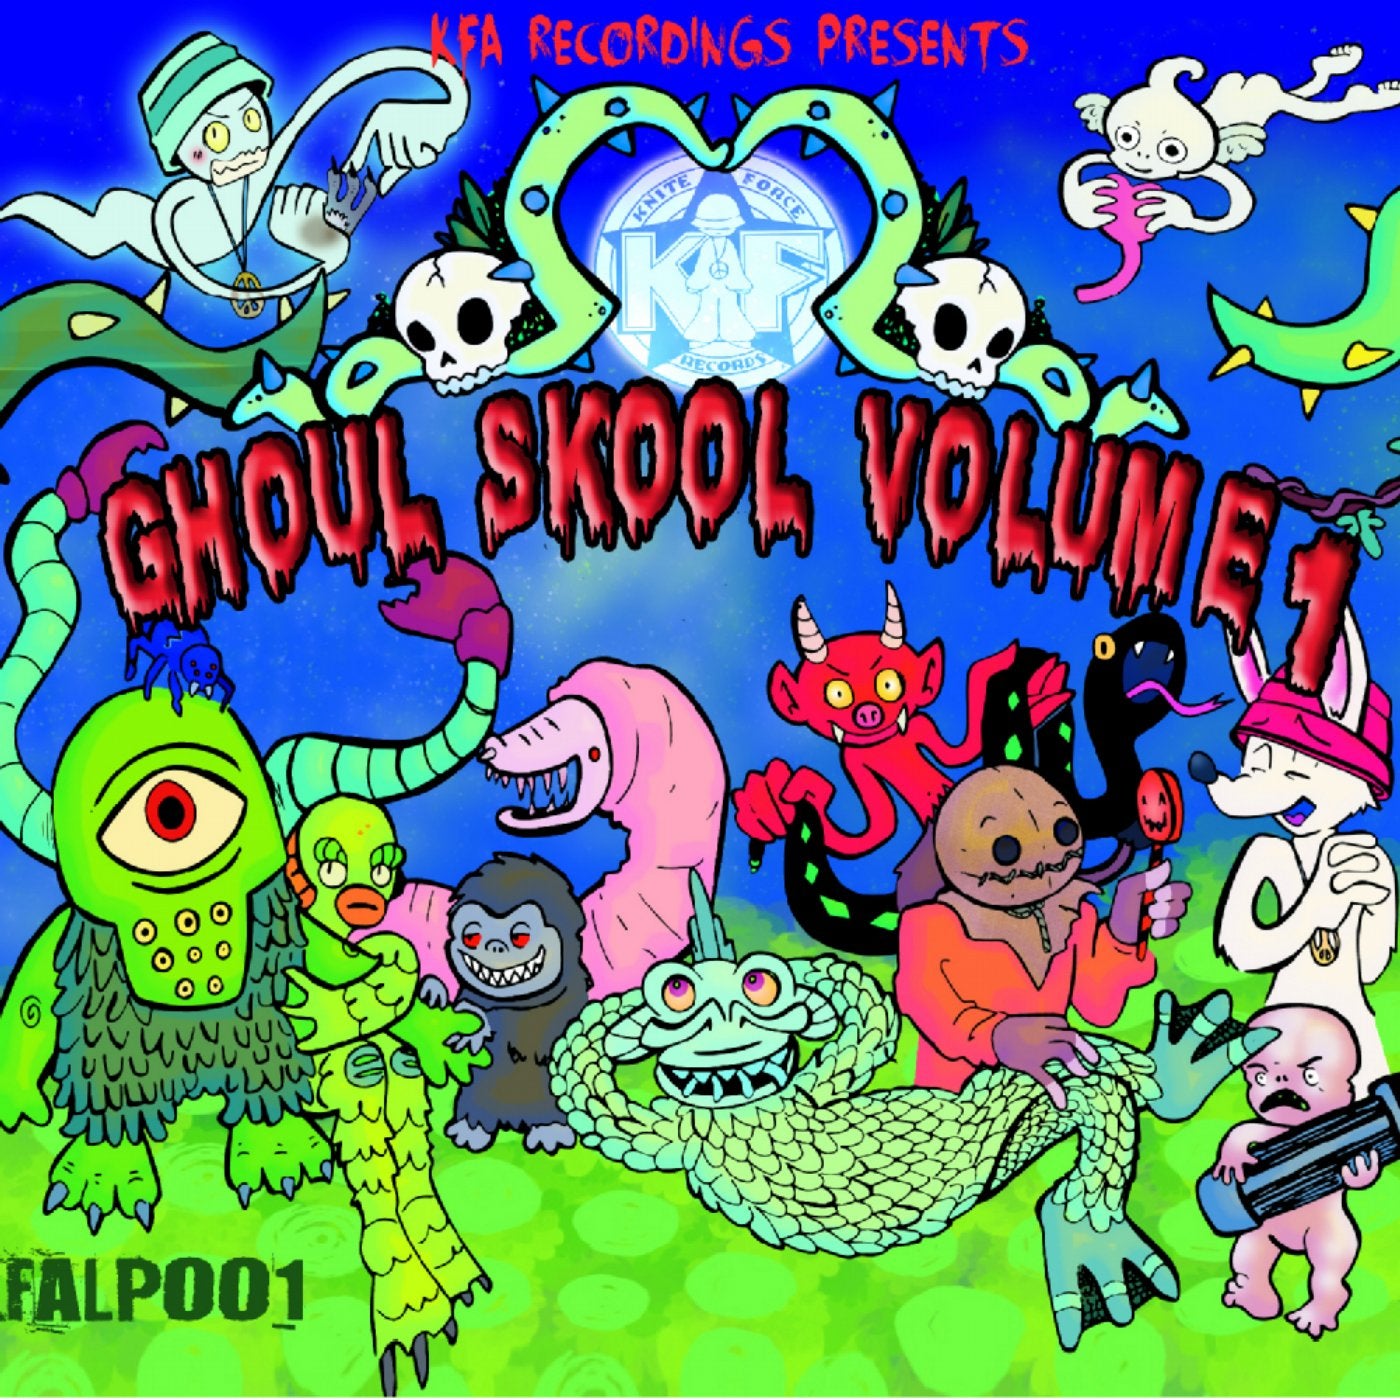 The Ghoul Skool, Vol. 1